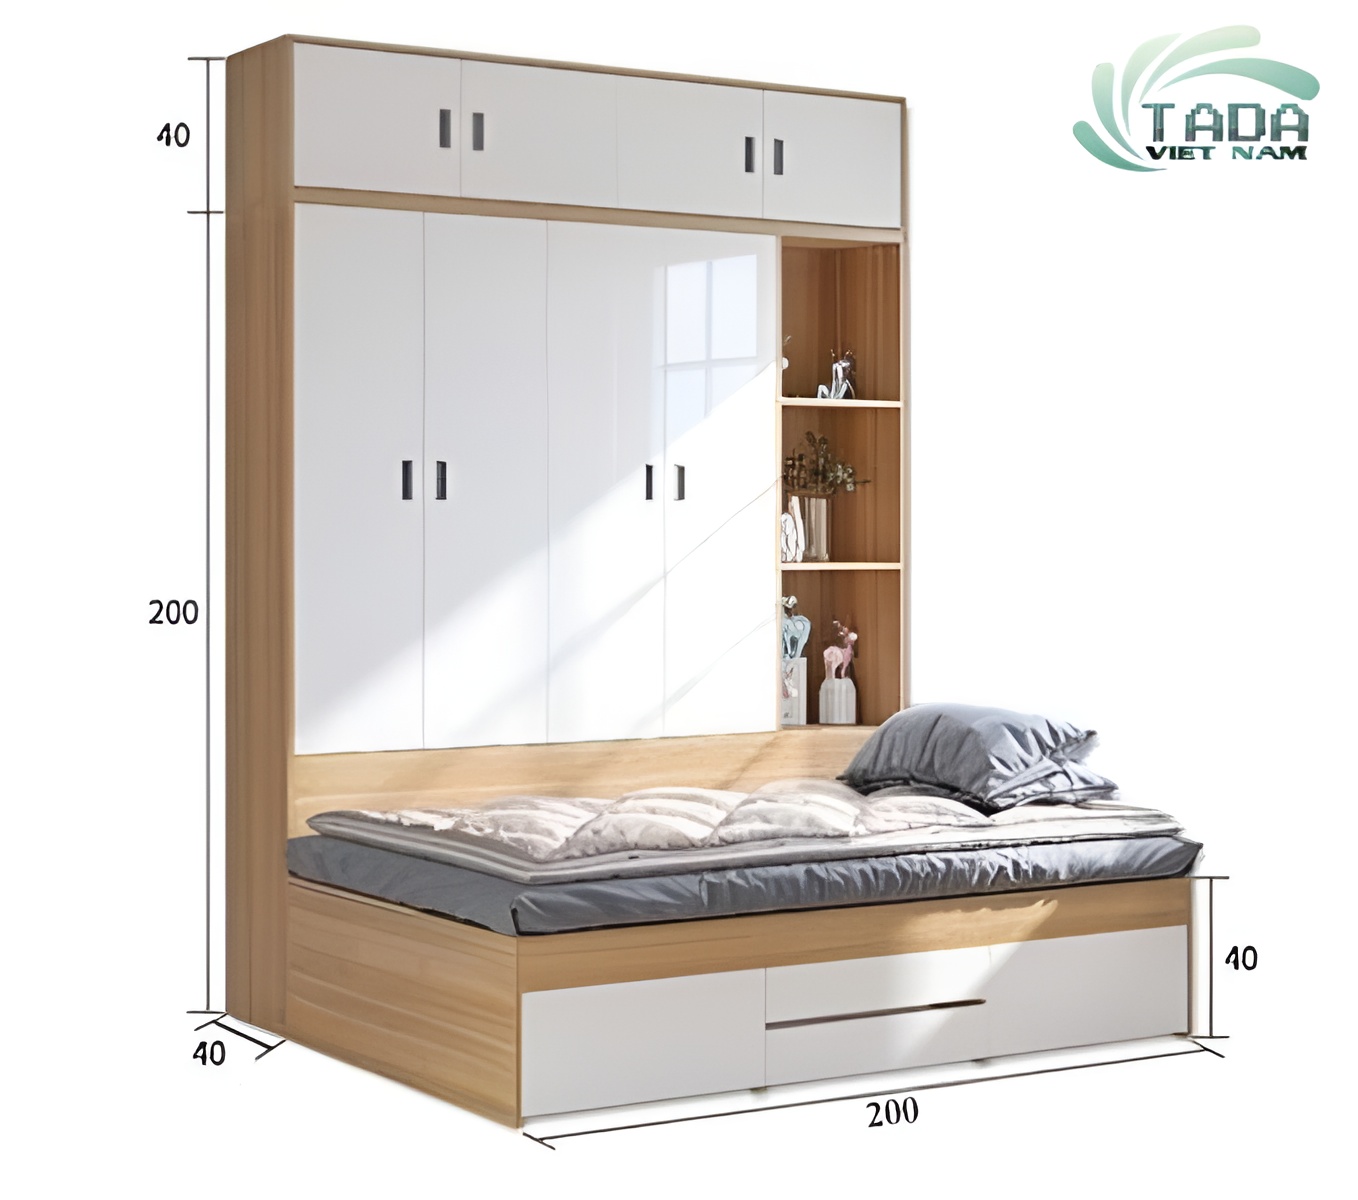 Mẫu giường liền tủ thông minh đa năng cho mọi không gian, thương hiệu Tada Việt Nam TD3194